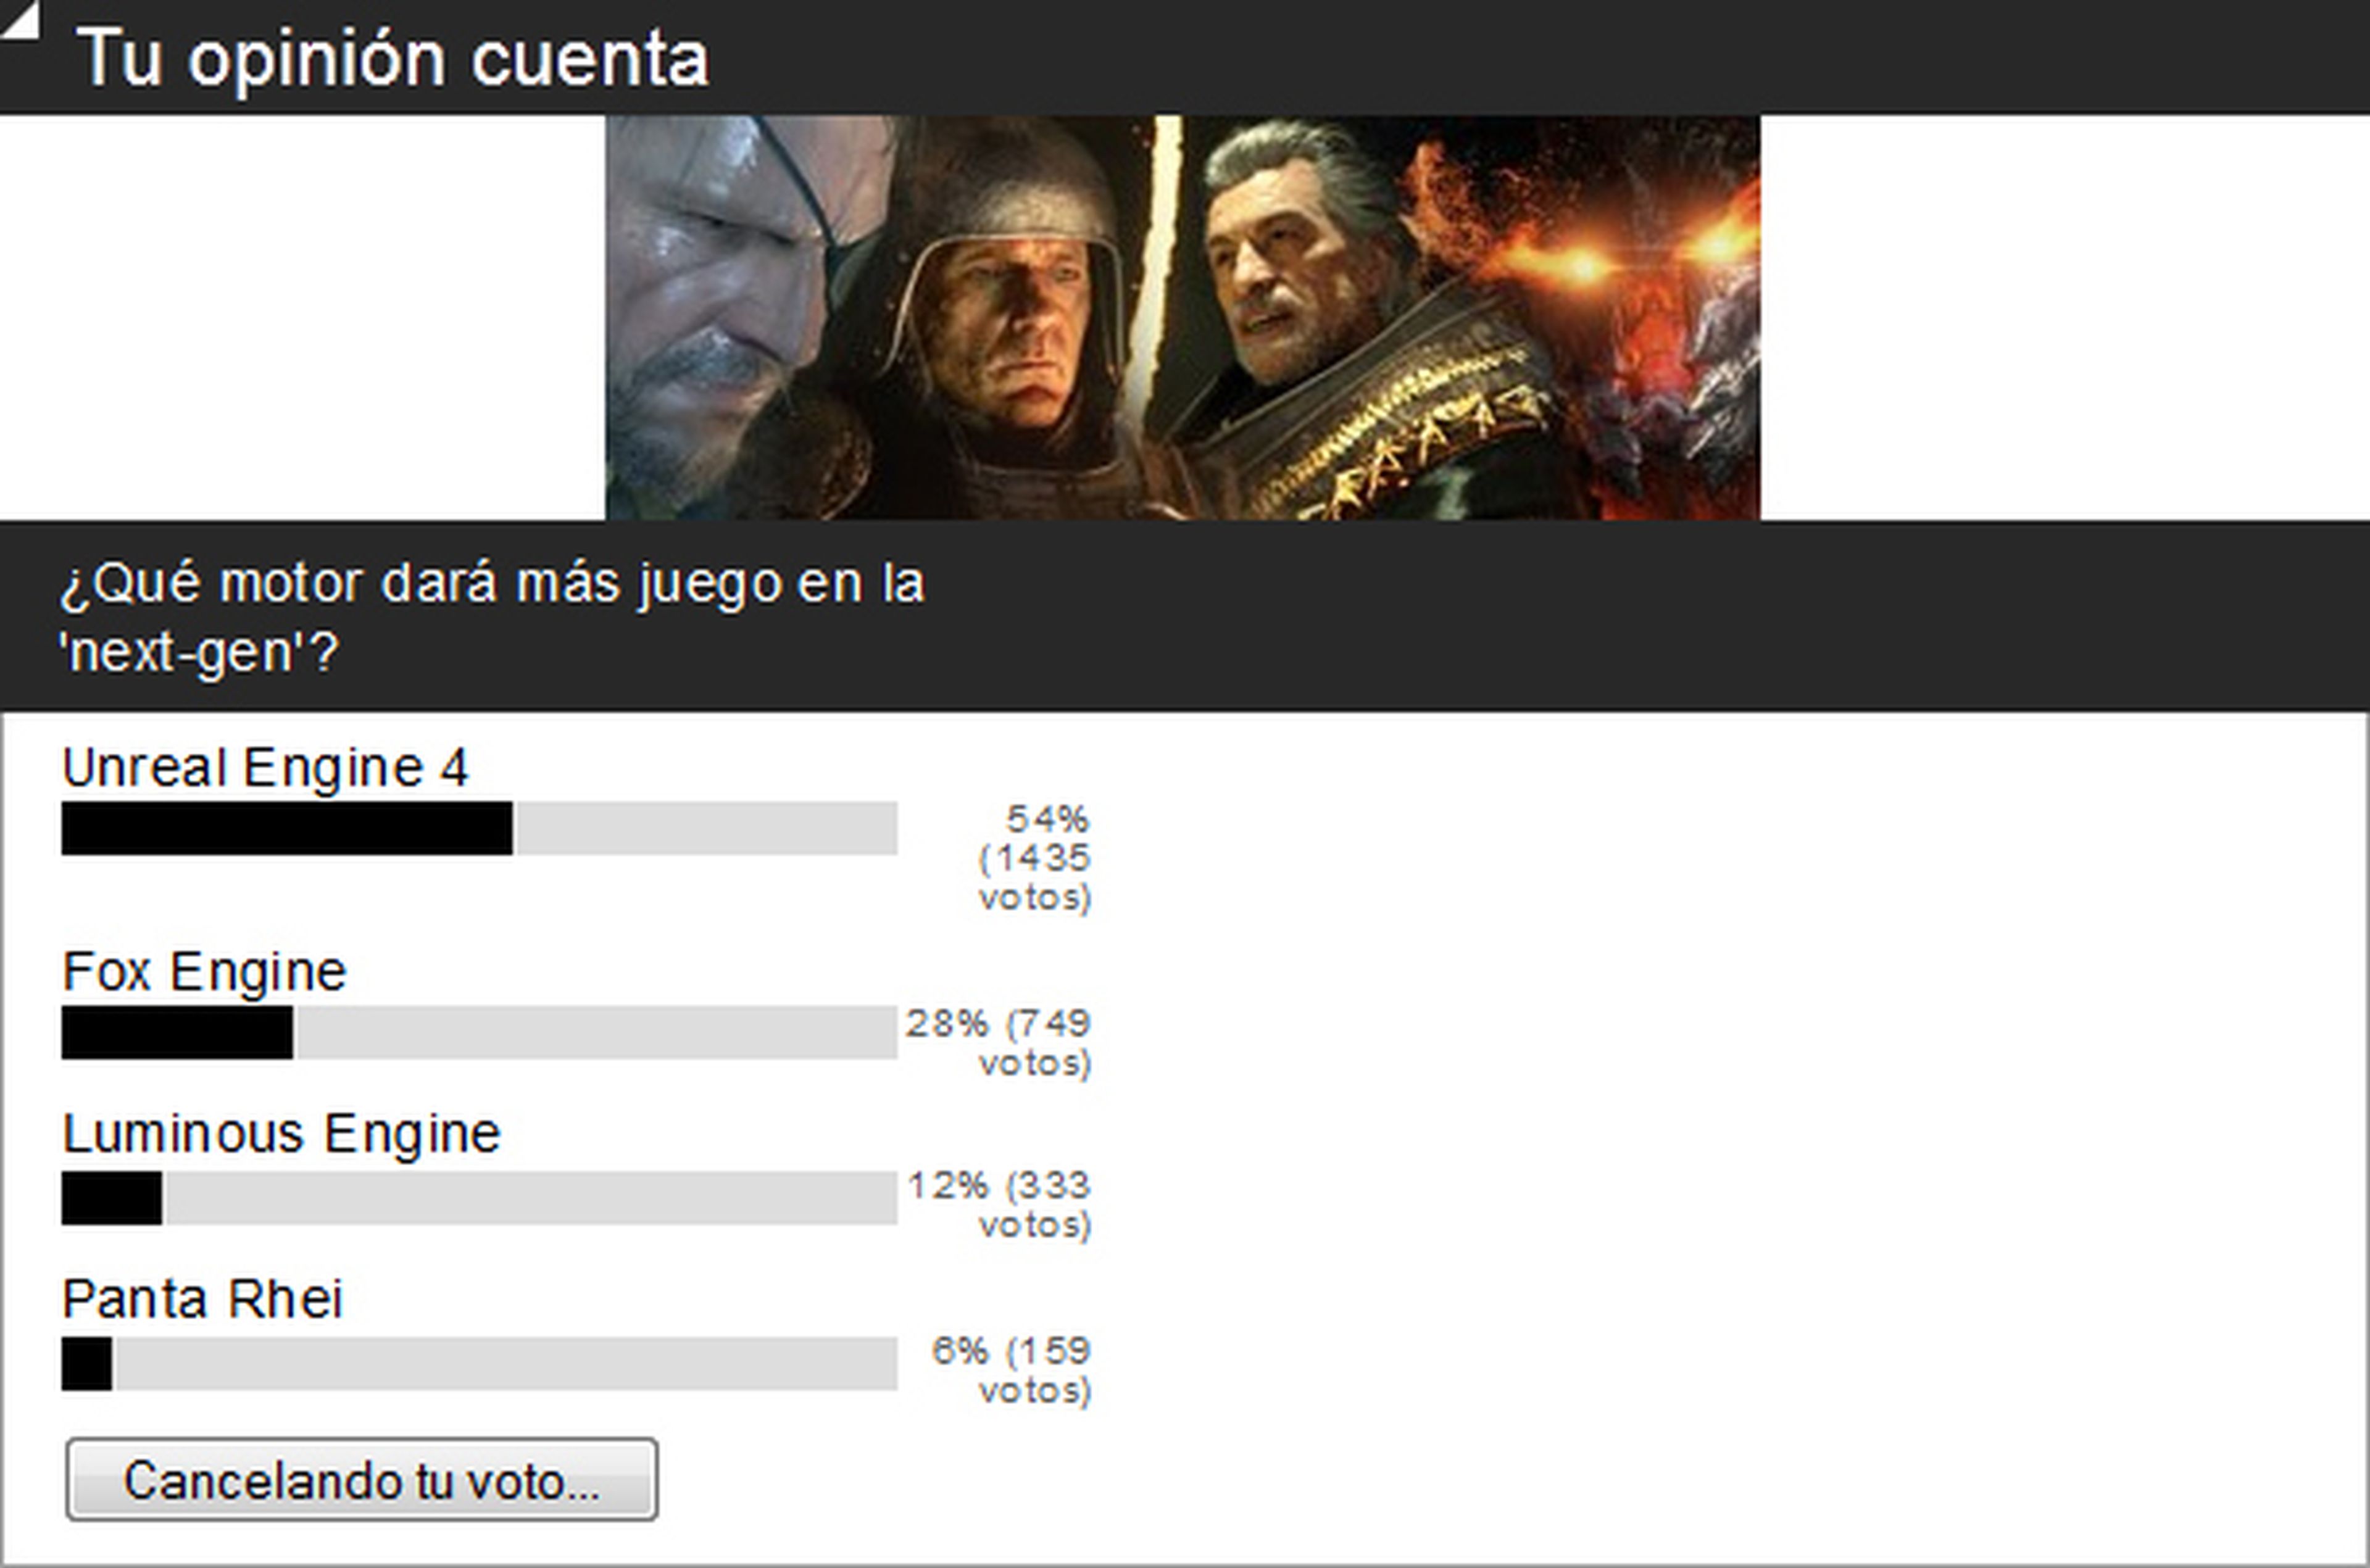 Encuesta: Unreal Engine 4 es el más interesante